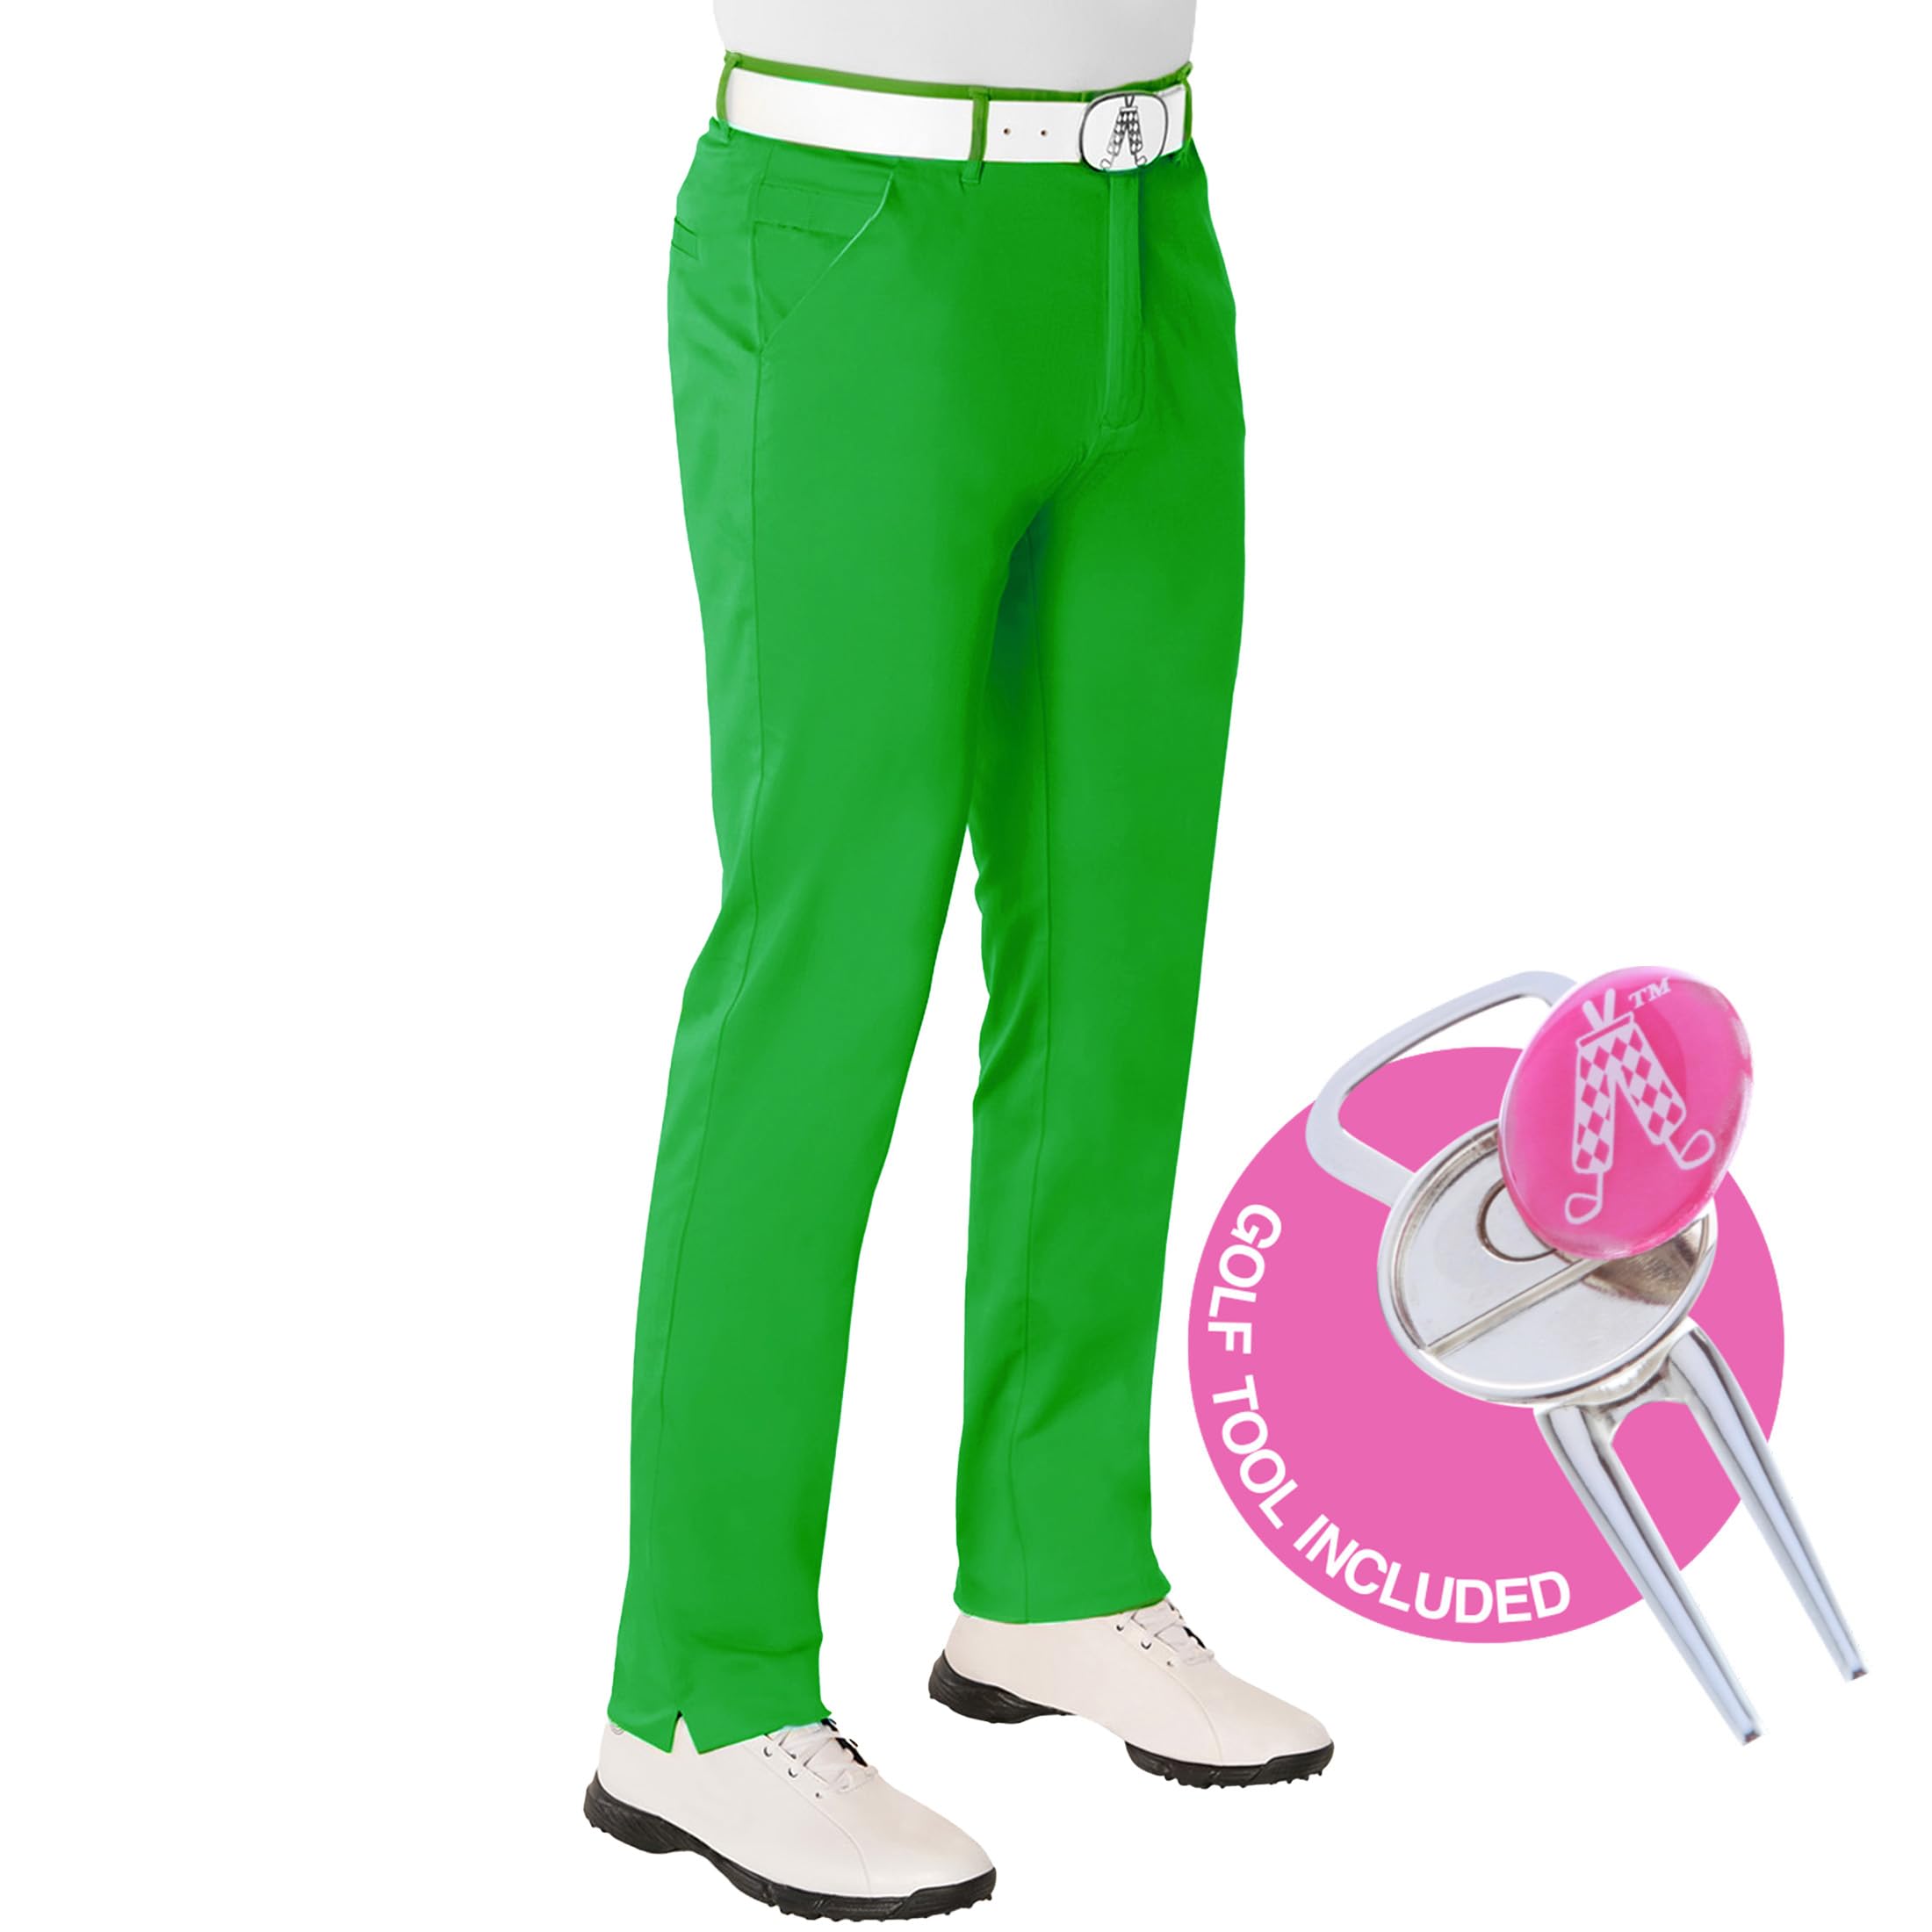 Royal & Awesome Green Golf Hosen für Männer, Herrengolfhosen, Funky Herrengolfhosen, Golf -Chinos für Männer